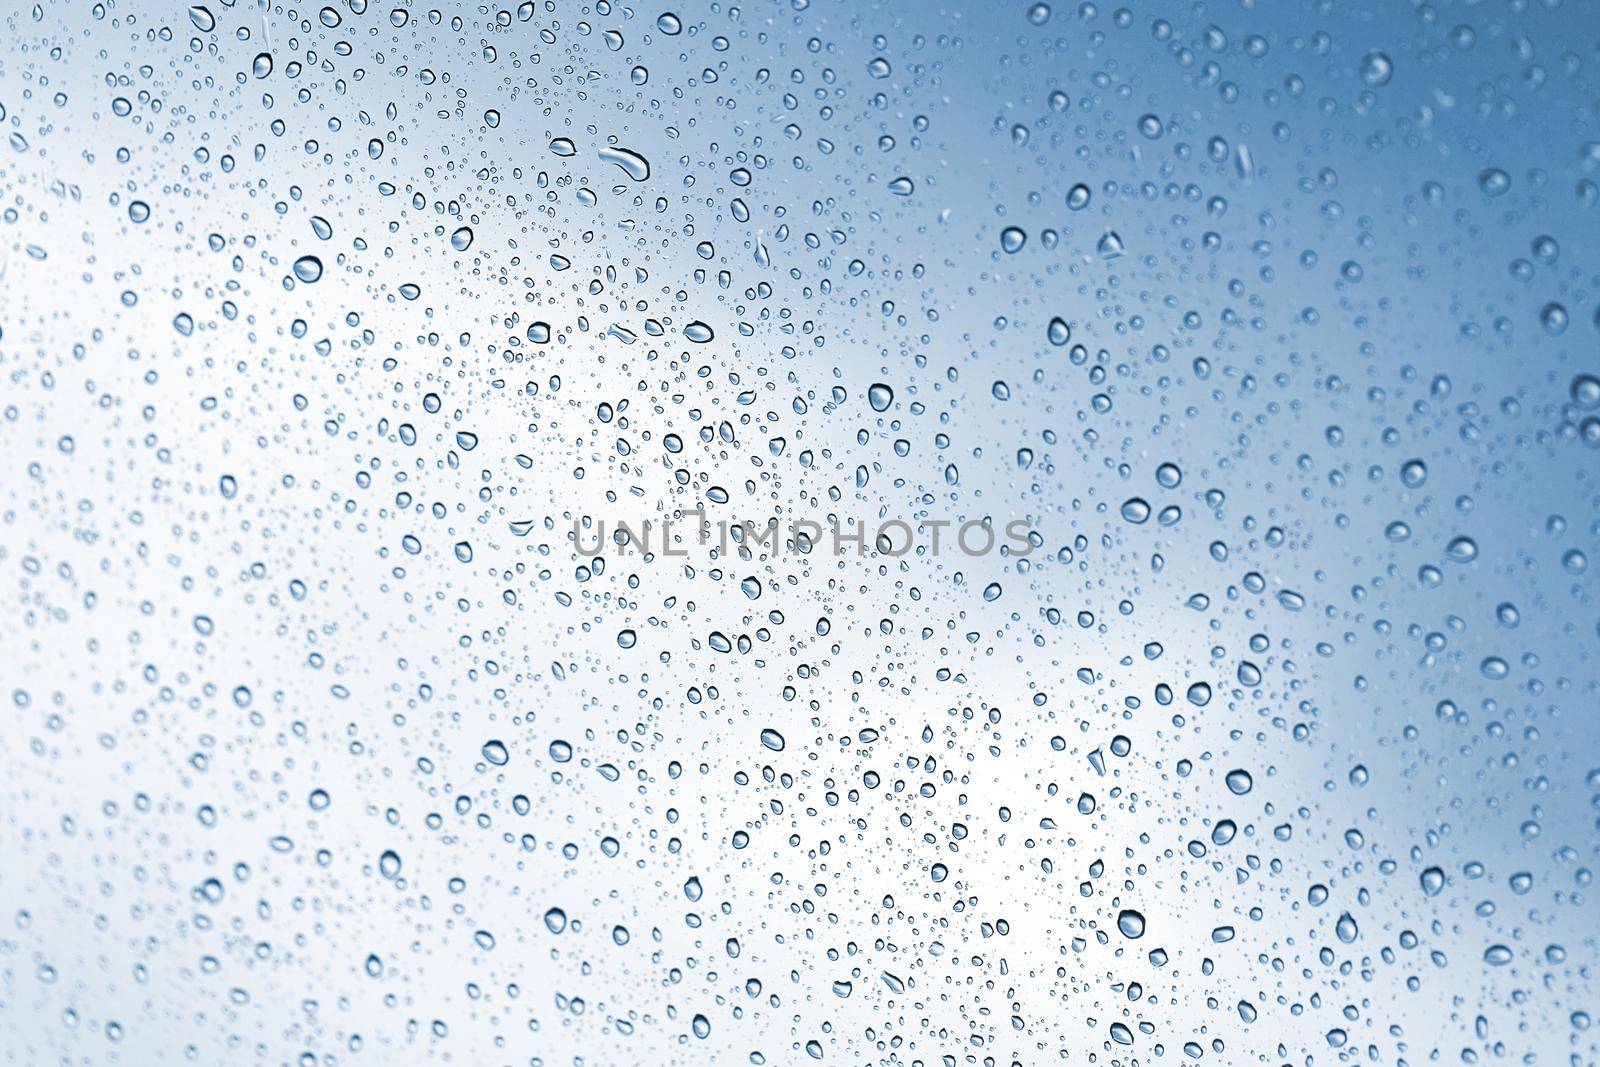 Rainy water drop on glass mirror background. by jayzynism